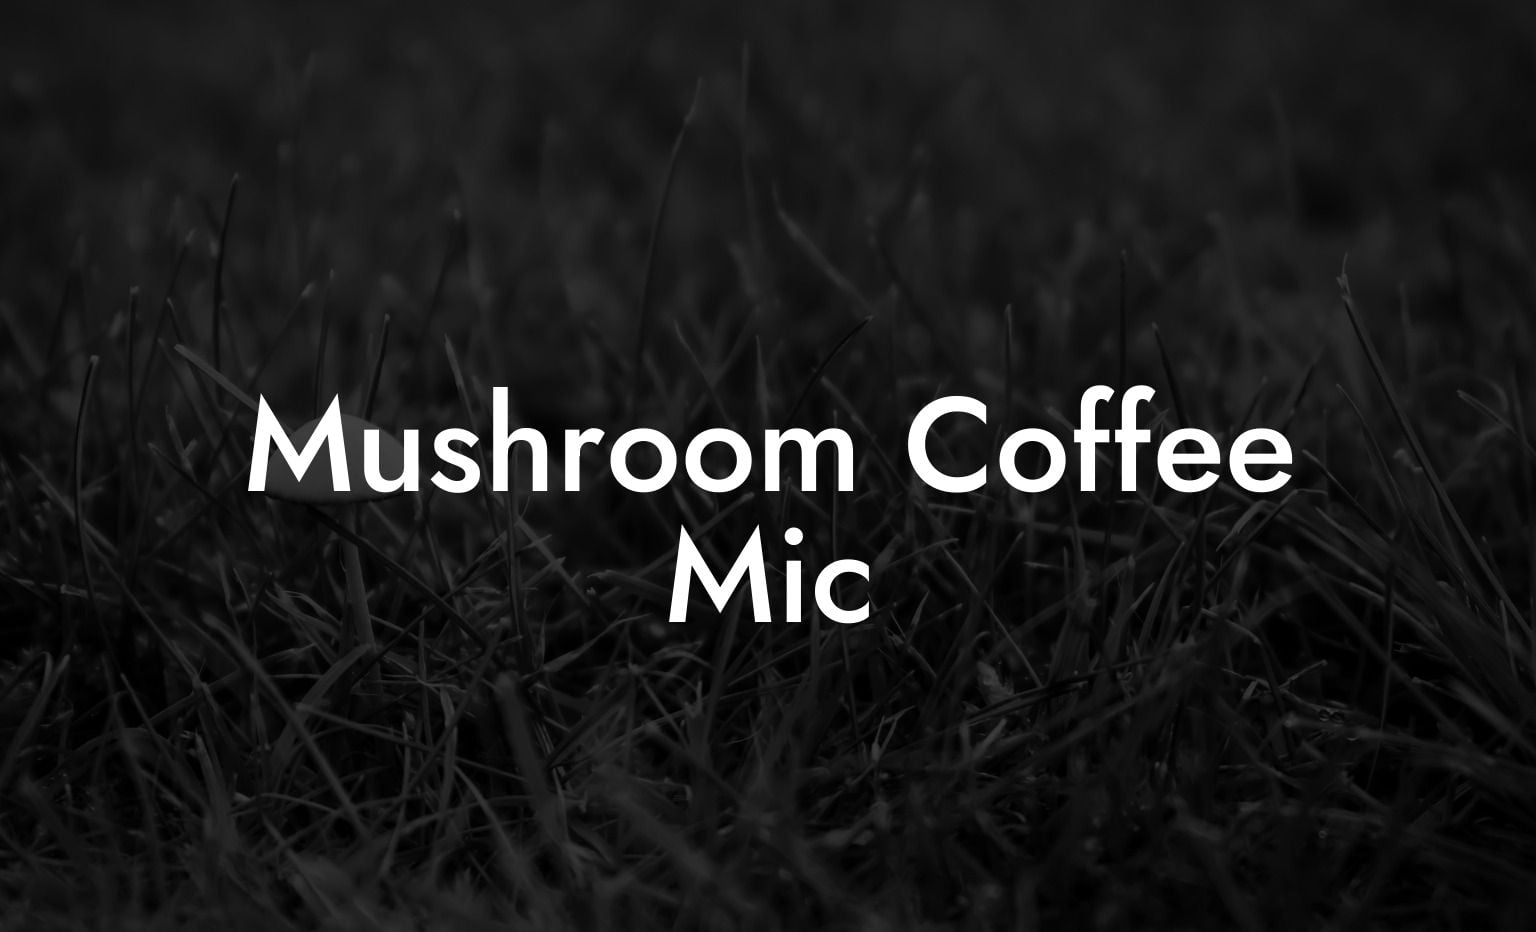 Mushroom Coffee Mic